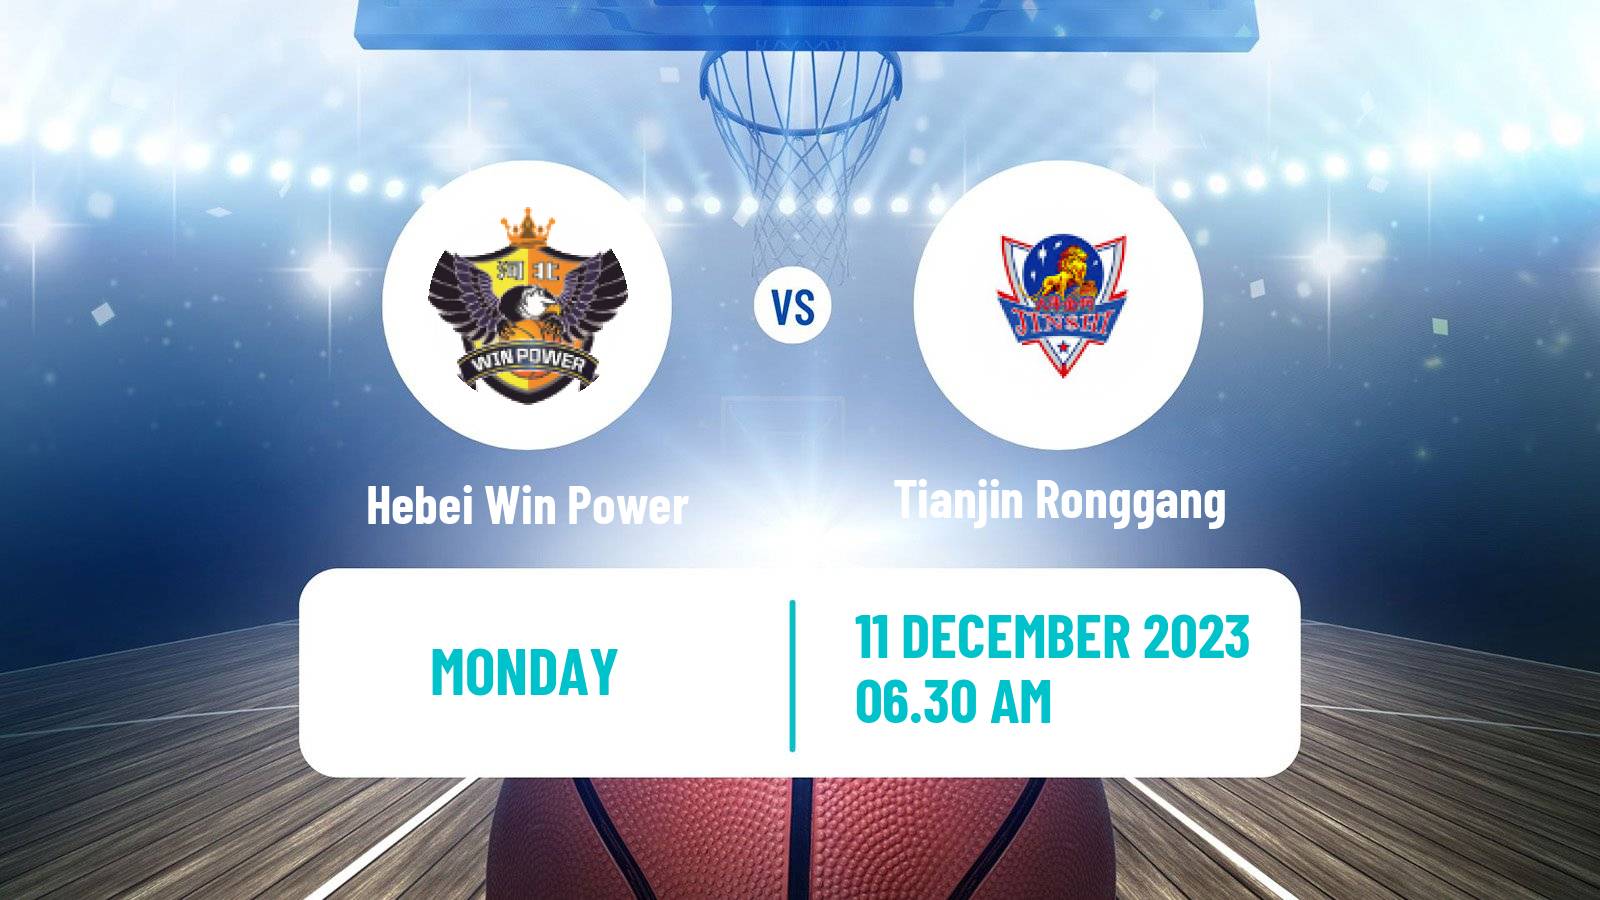 Basketball WCBA Hebei Win Power - Tianjin Ronggang